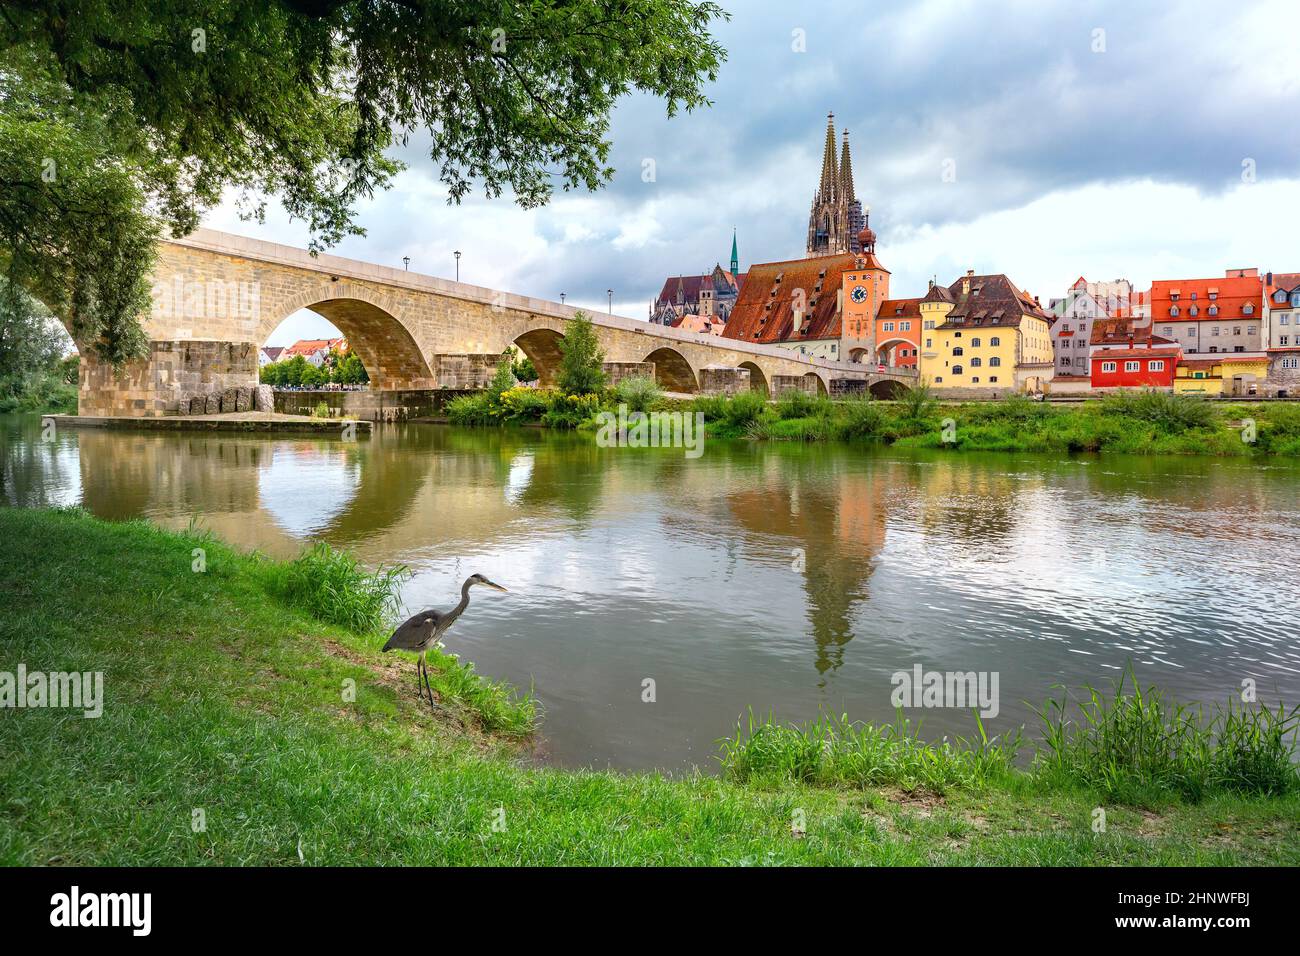 Panorama del puente de piedra, la catedral y el casco antiguo de Regensburg, Baviera oriental, Alemania Foto de stock